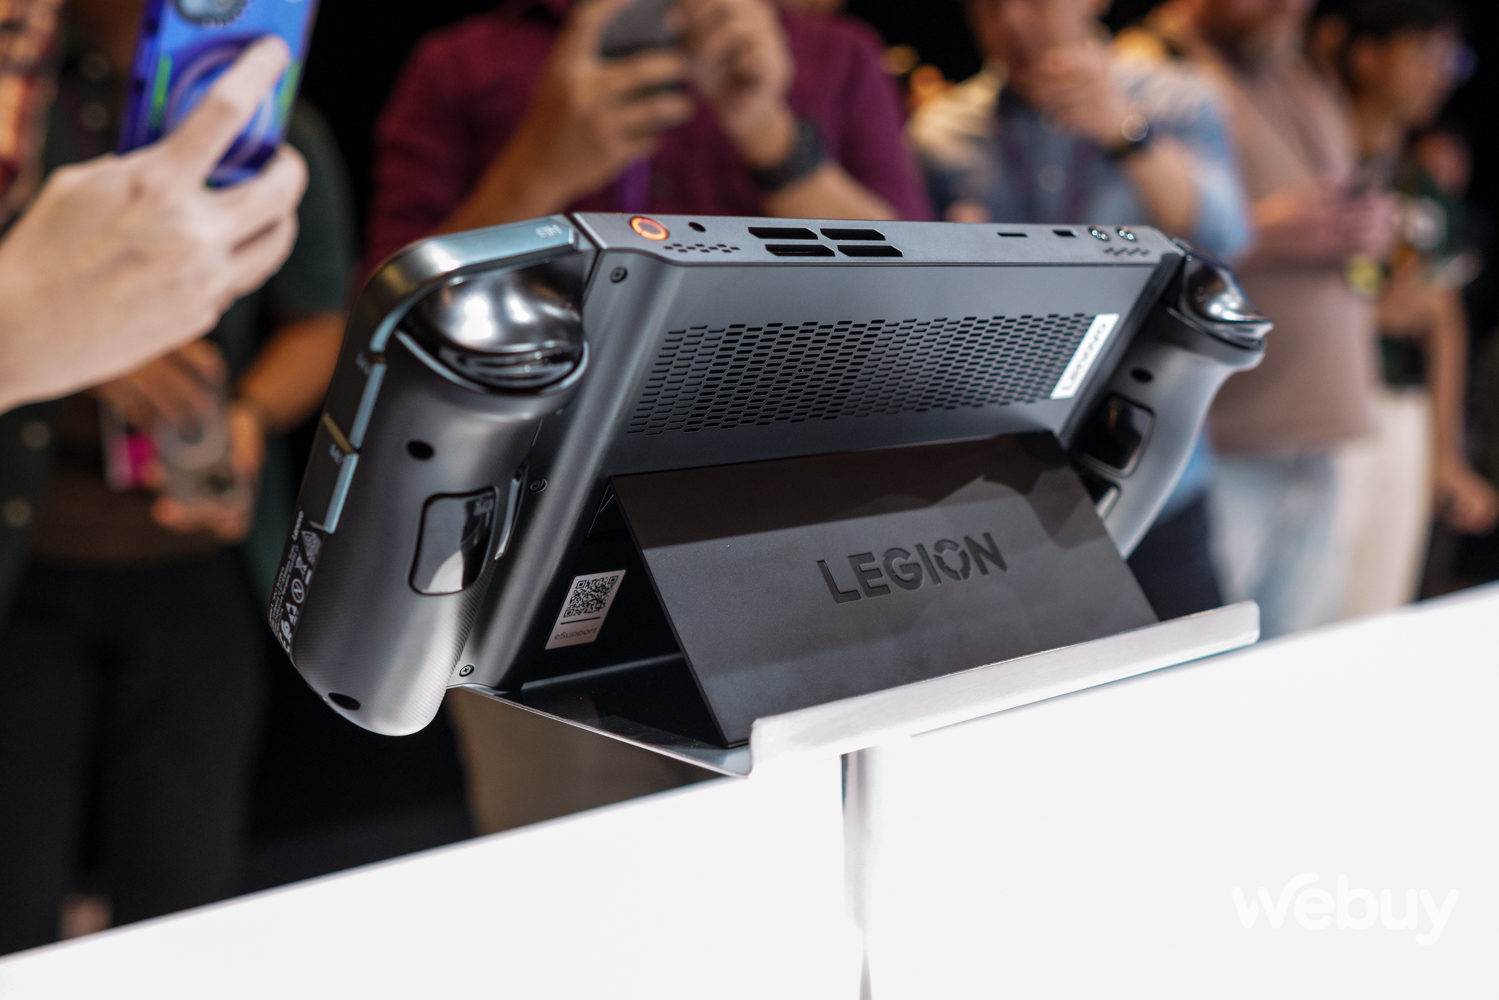 Trên tay máy chơi game cầm tay Lenovo Legion Go: Màn hình lớn 8.8 inch, tay cầm có thể tháo rời - Ảnh 10.